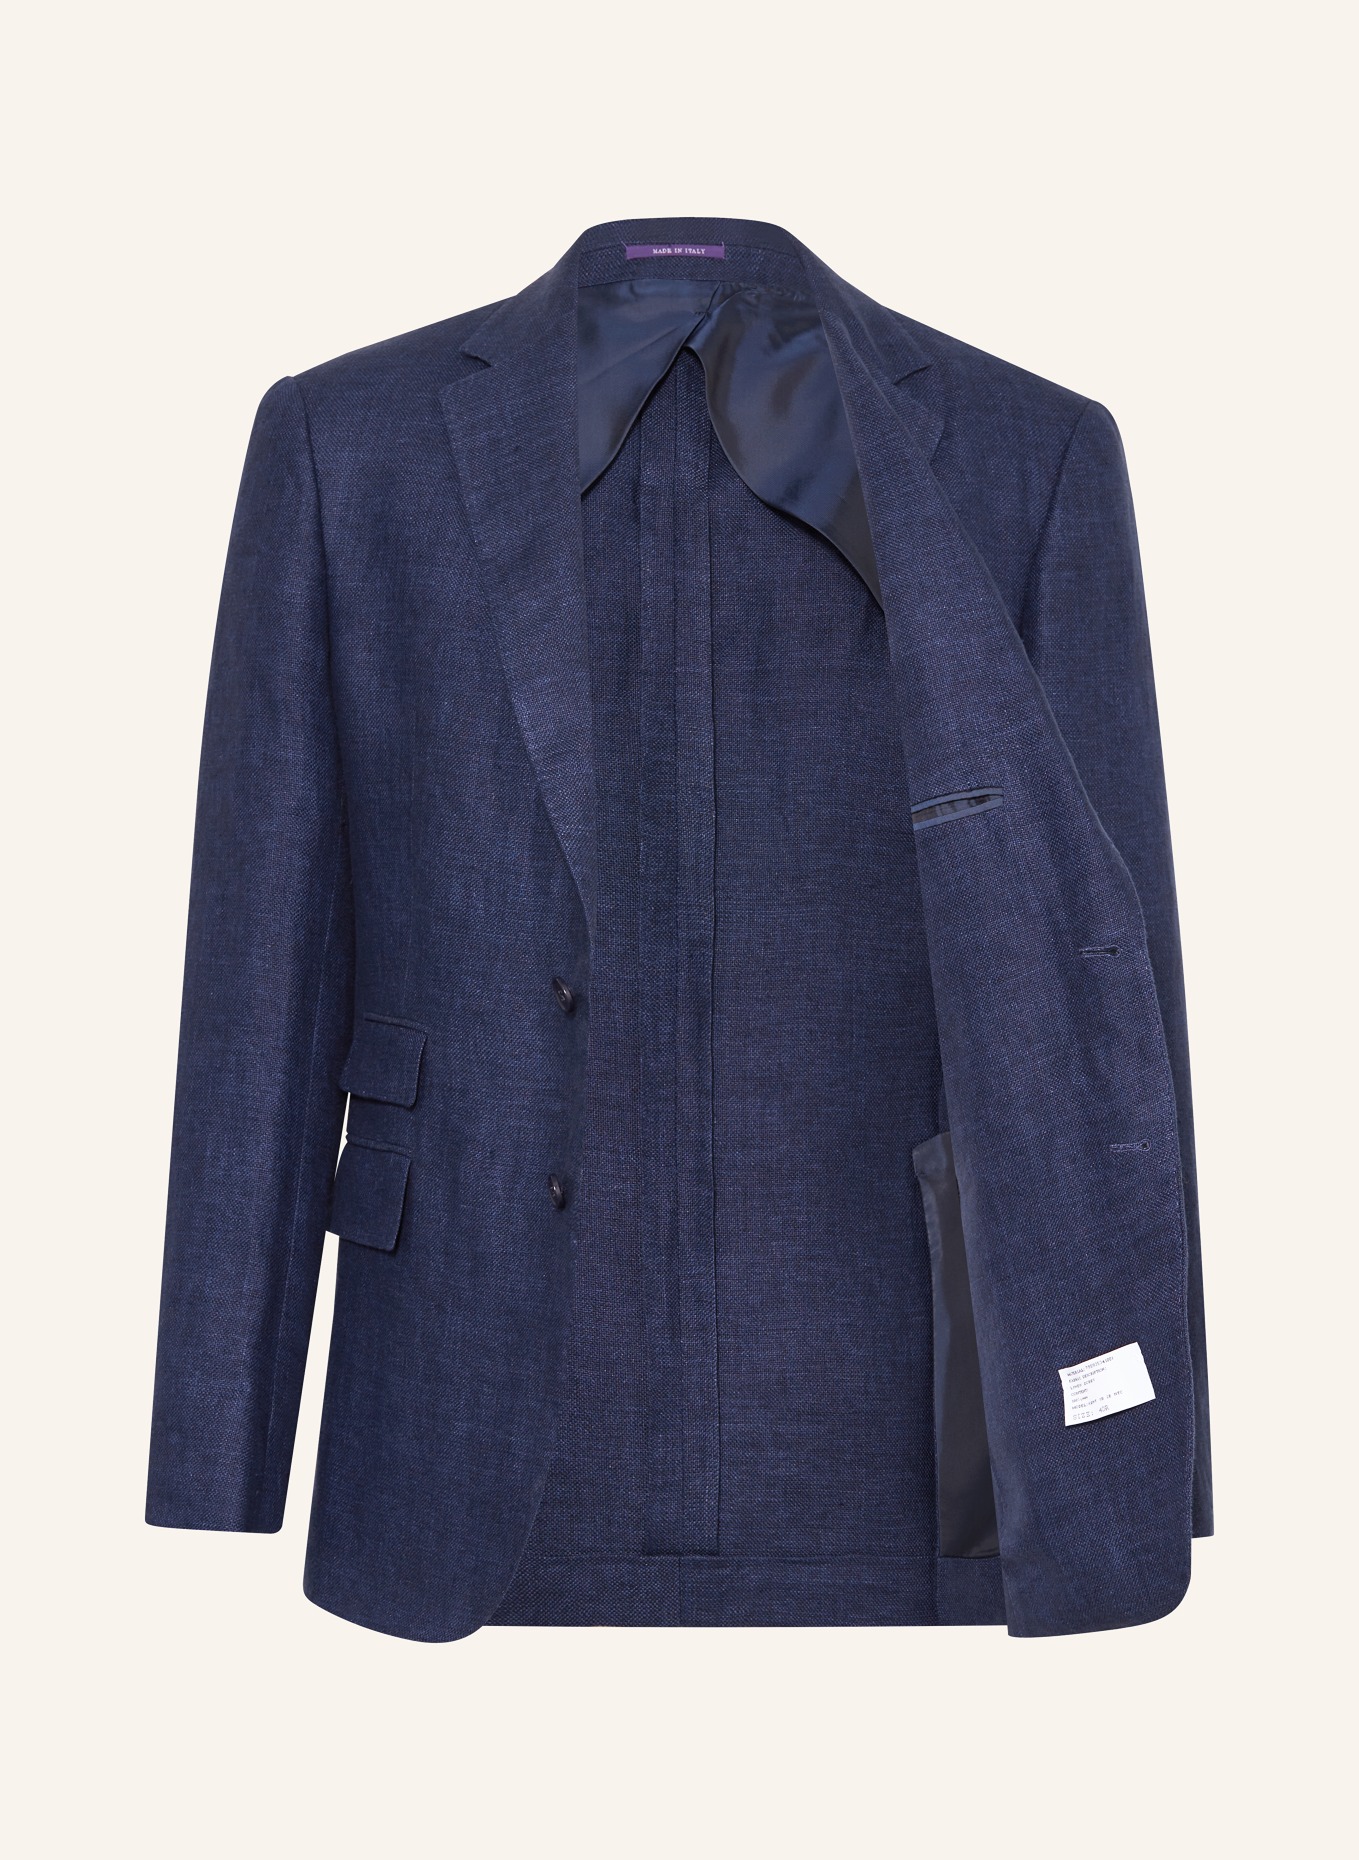 RALPH LAUREN PURPLE LABEL Suit jacket extra slim fit in linen, Color: DARK BLUE (Image 4)